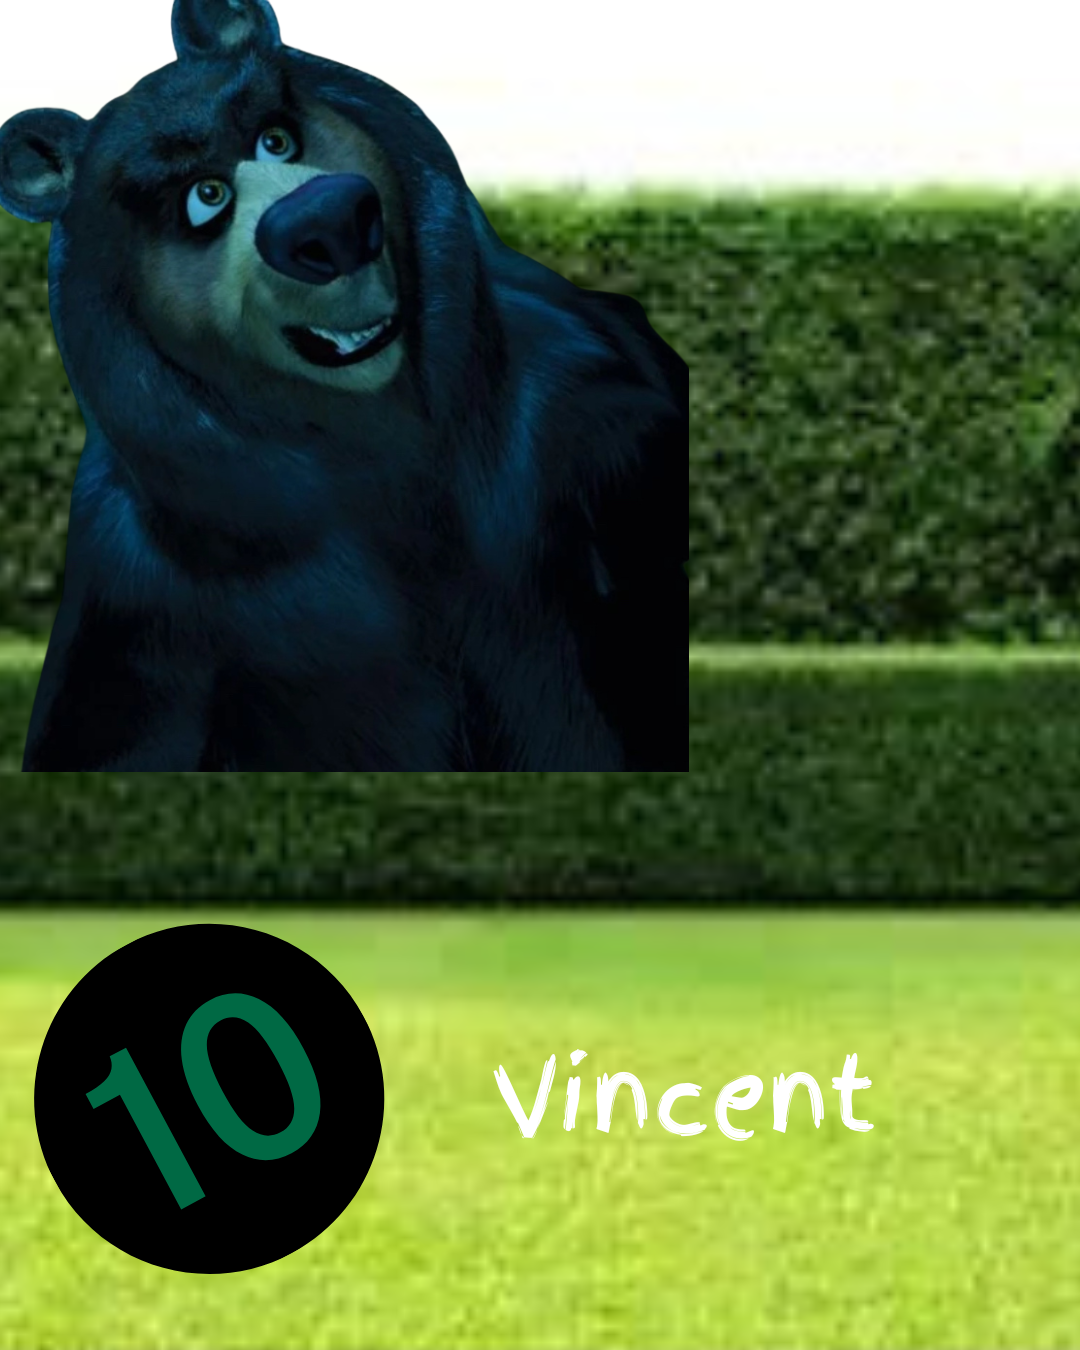 10. Vincent